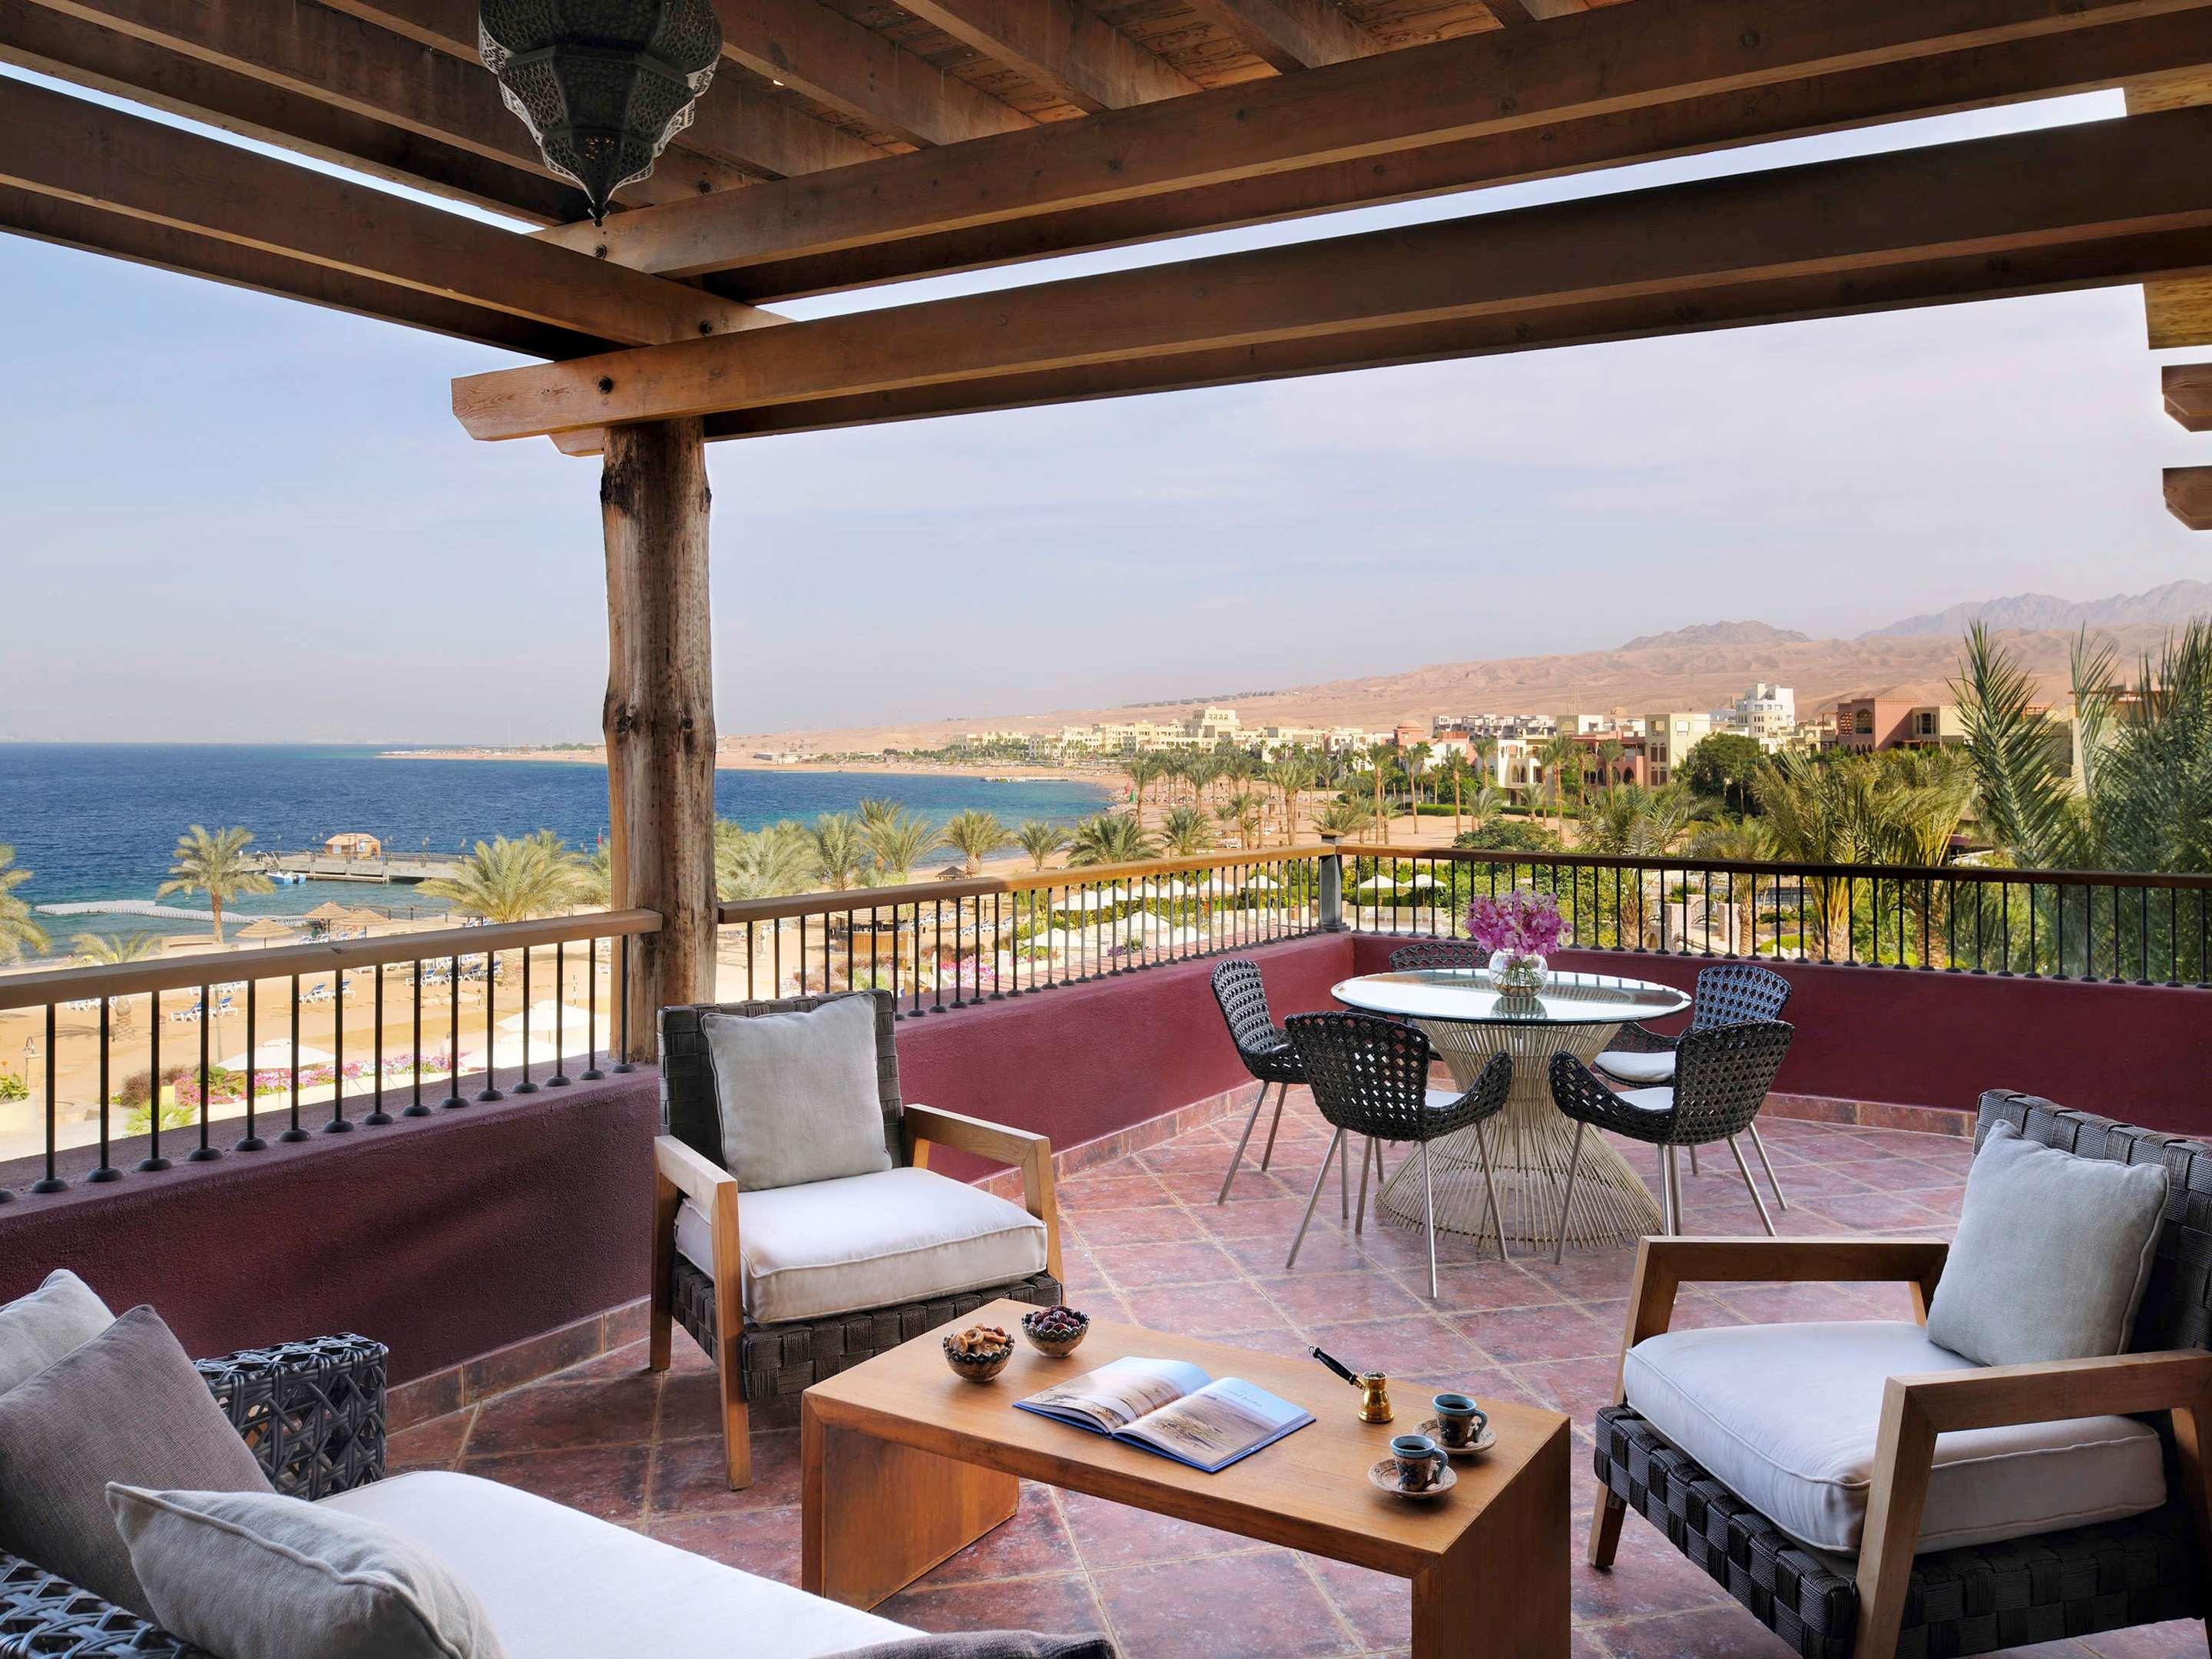 Resort & Spa Tala Bay Aqaba, Jordan - Compare Deals